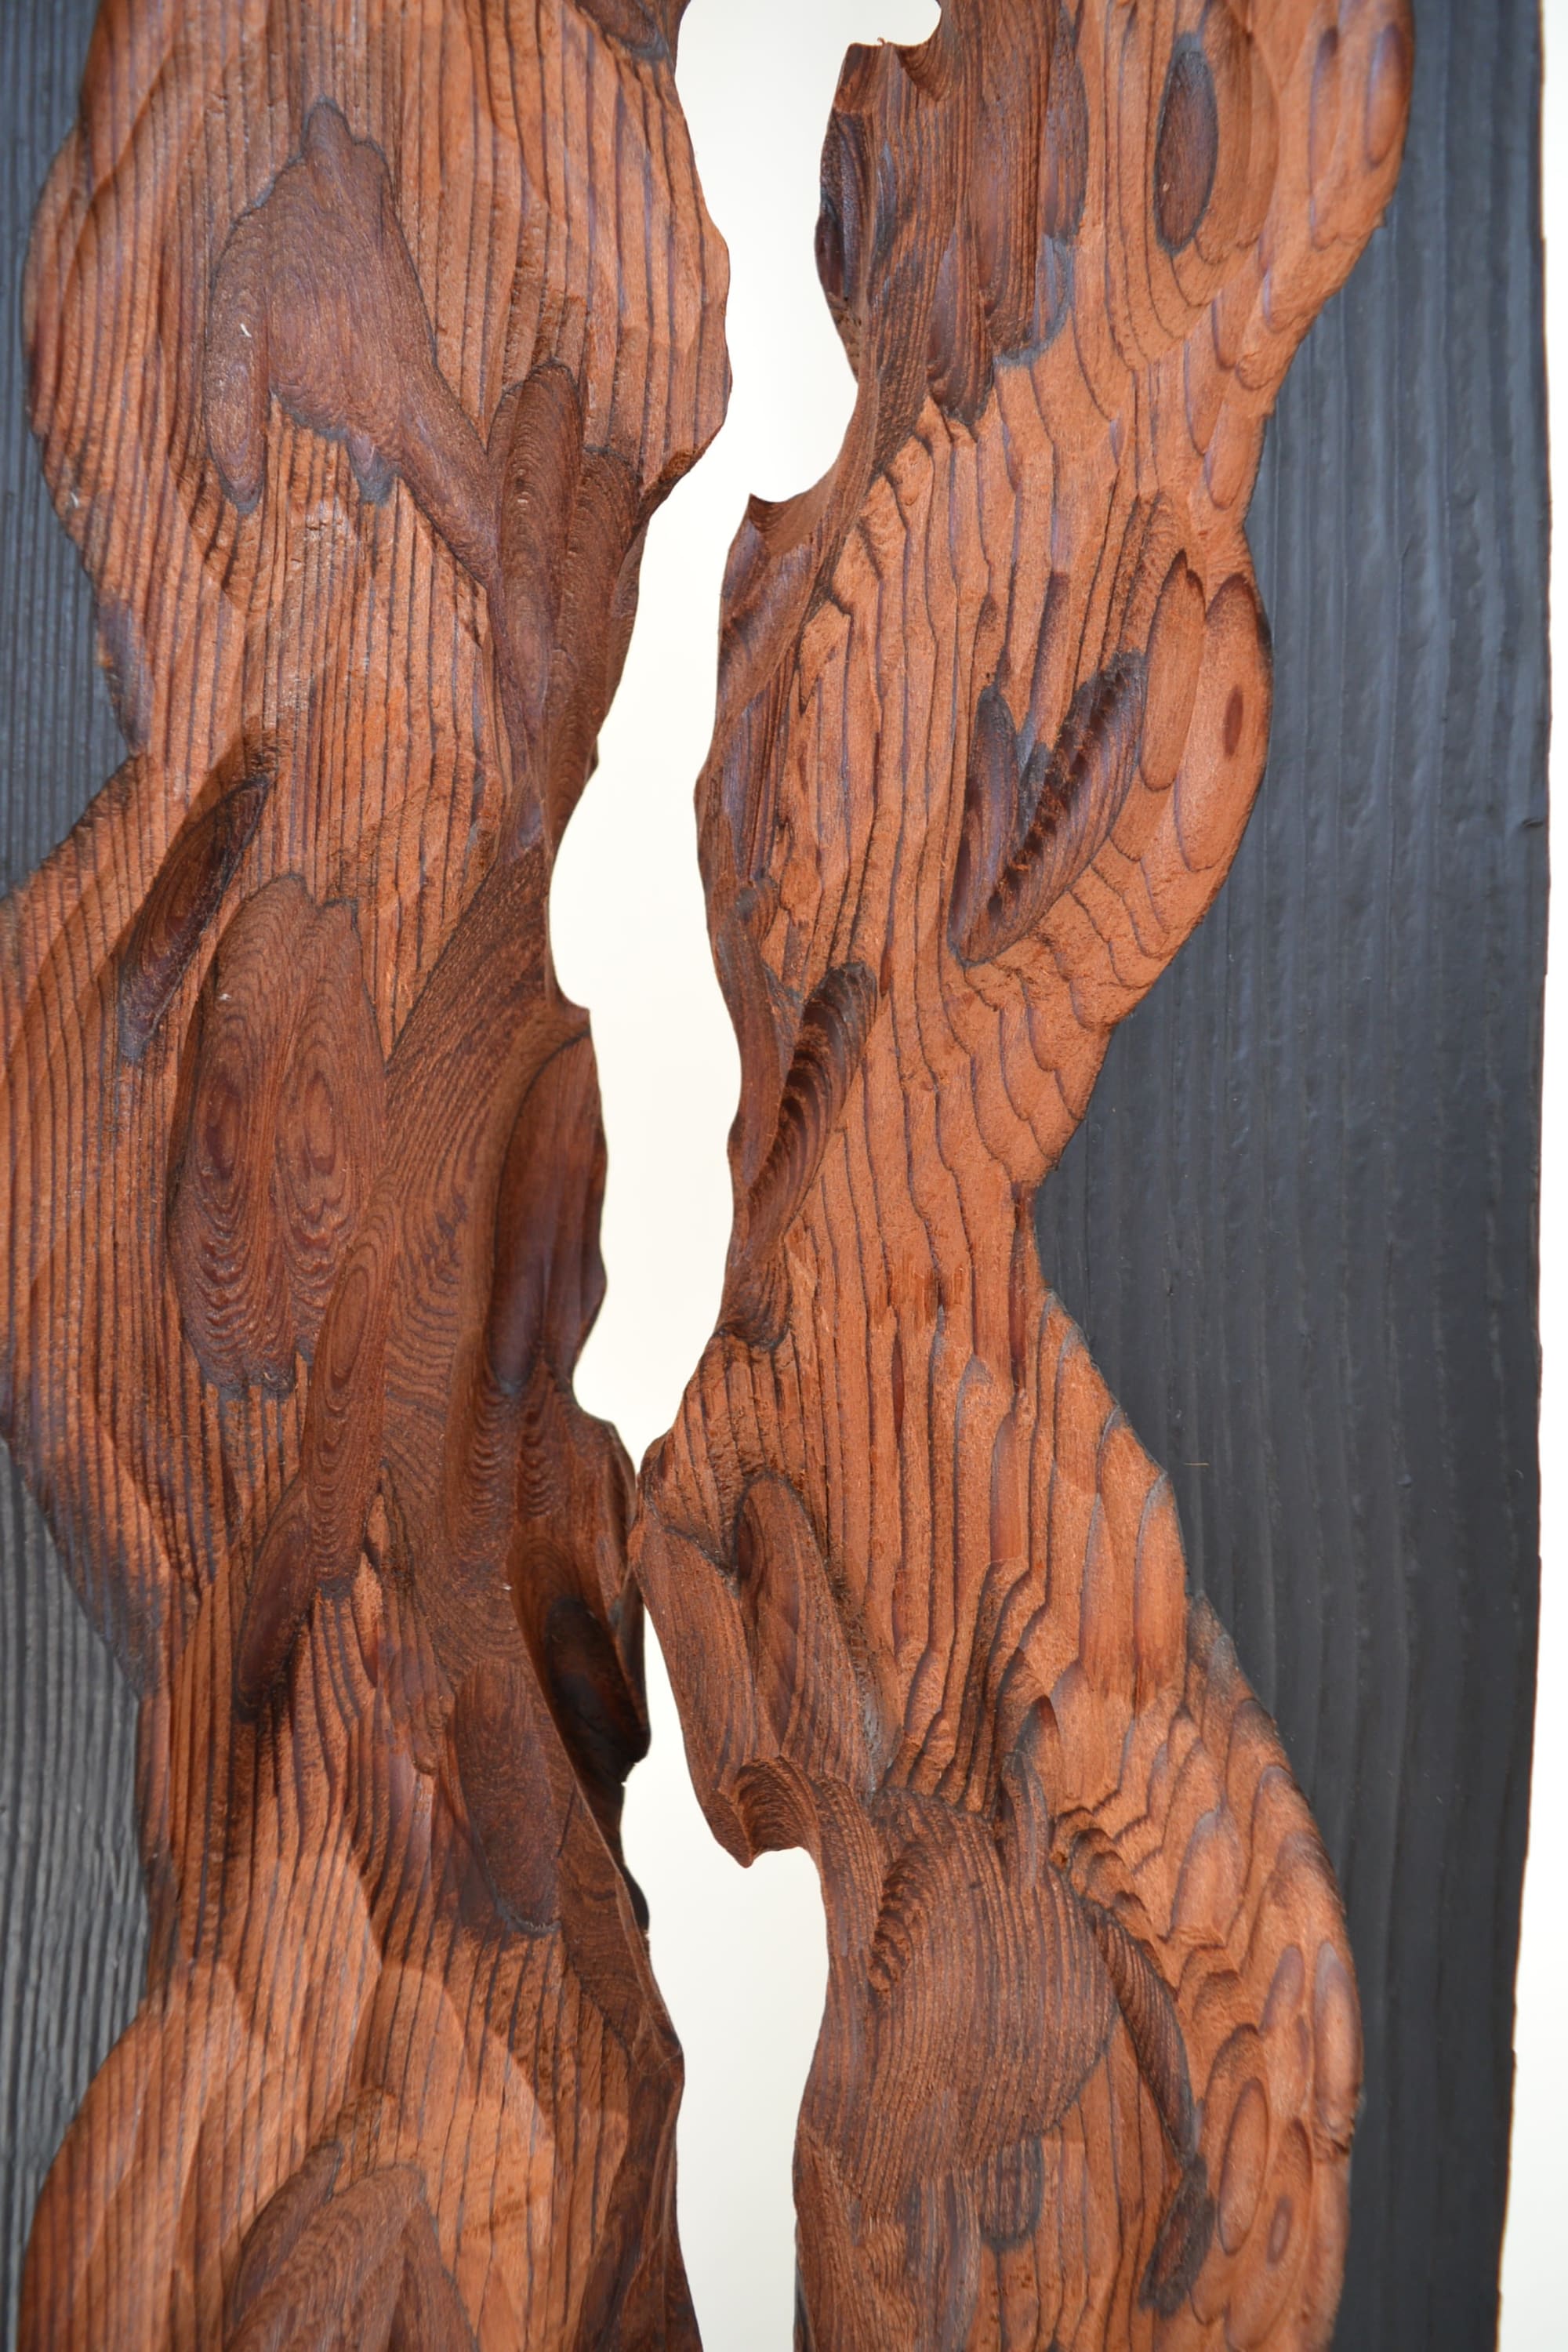 TOP 10 Wooden Sculptures - IGNANT